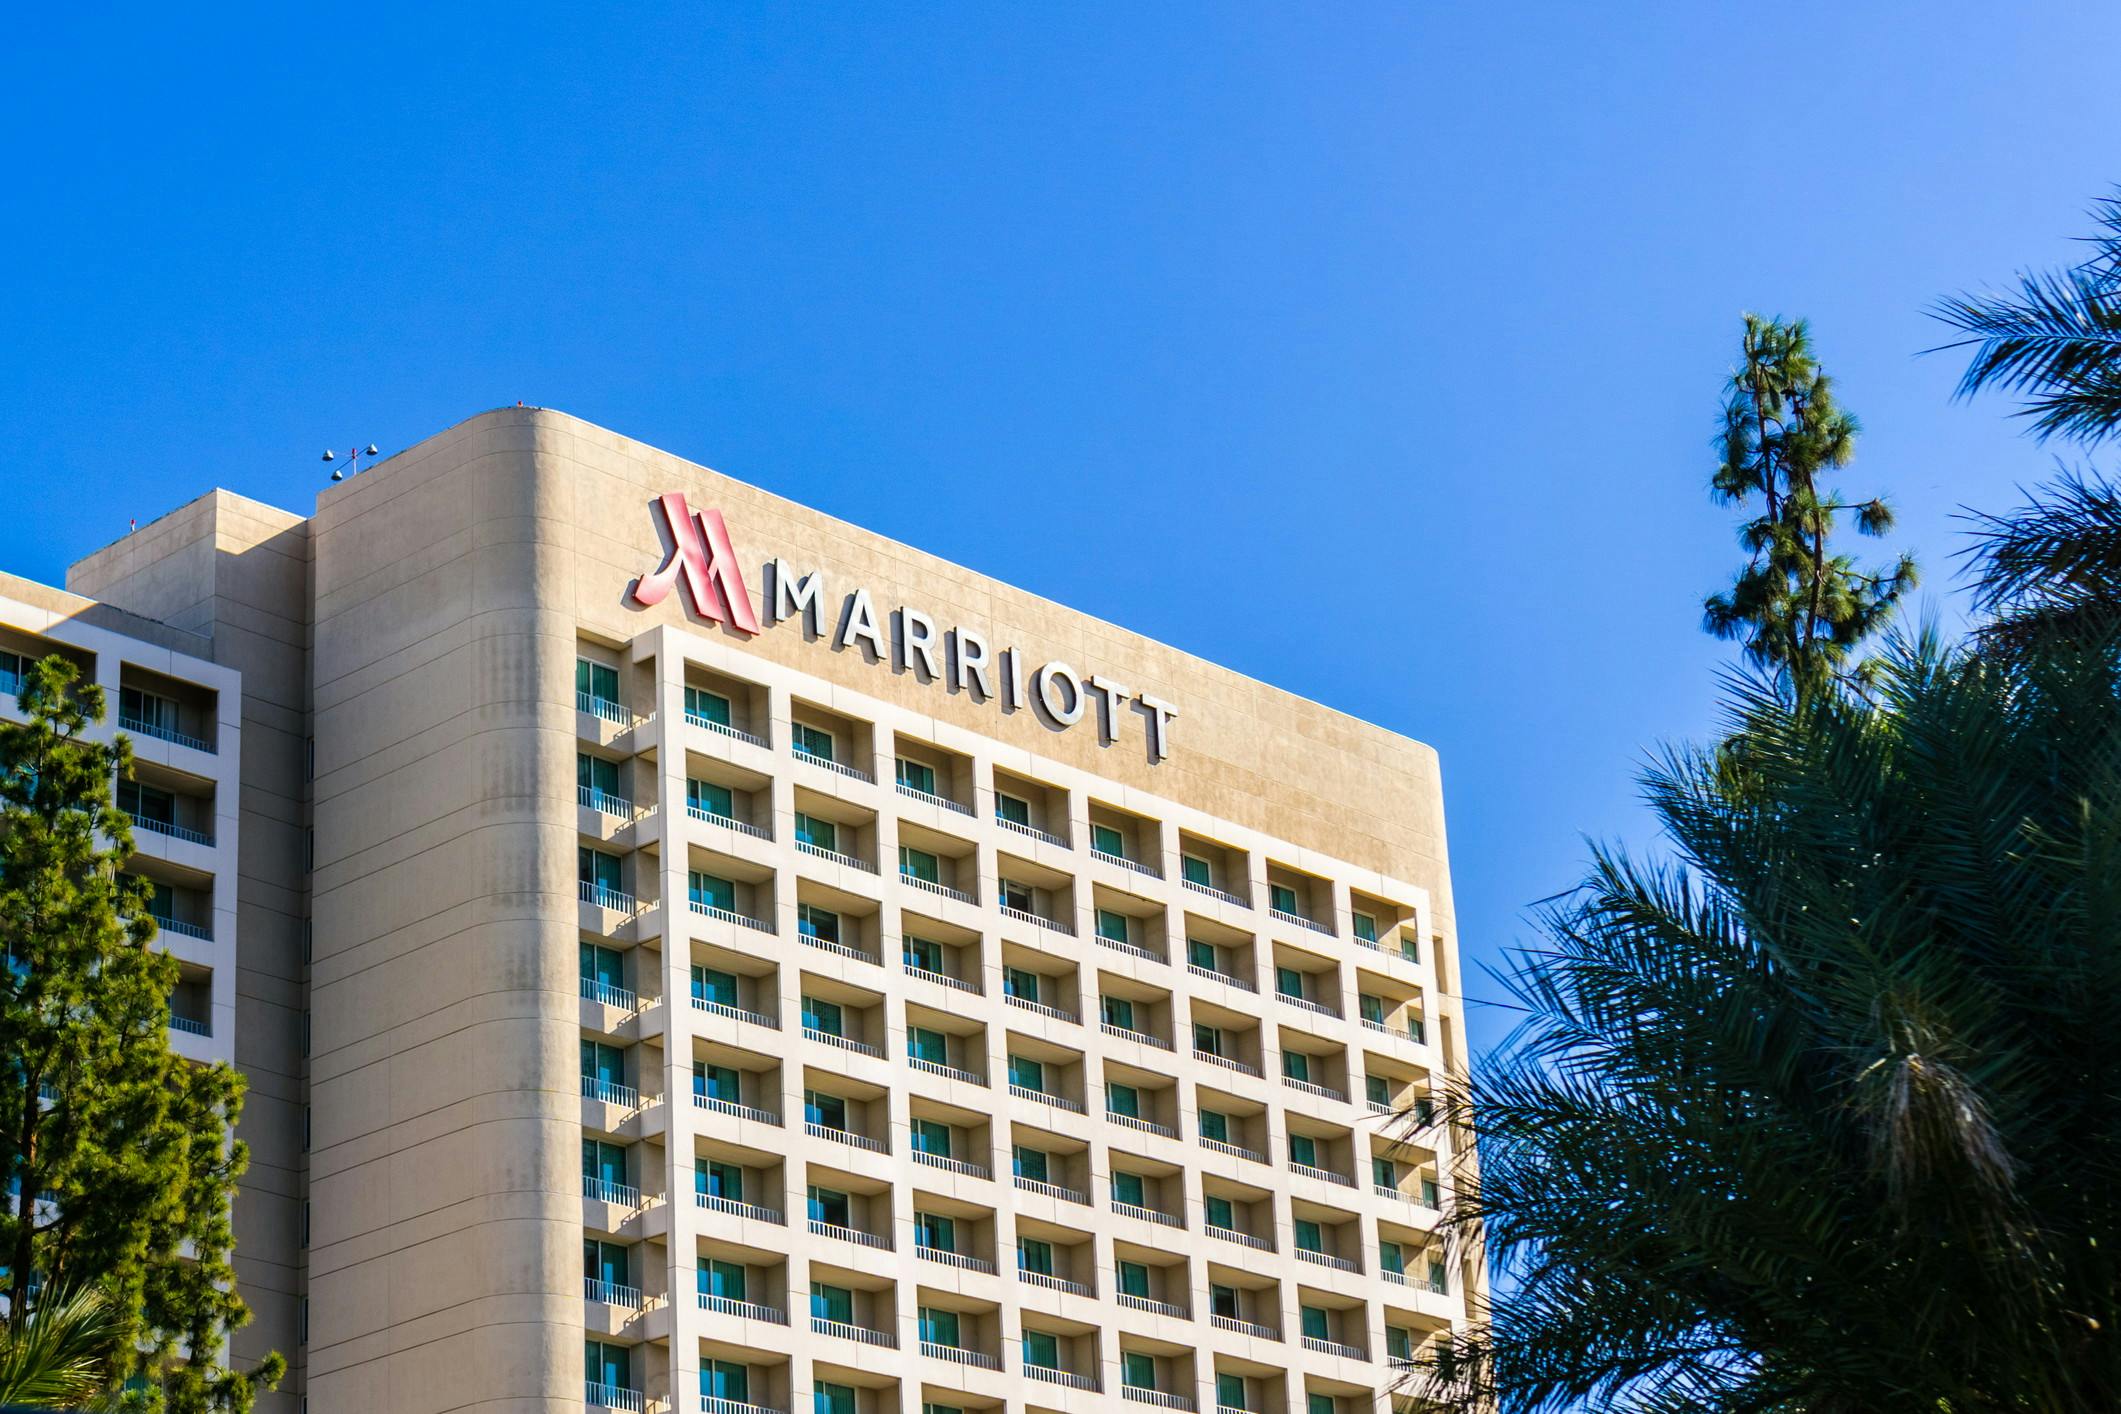 Marriott hotel facade